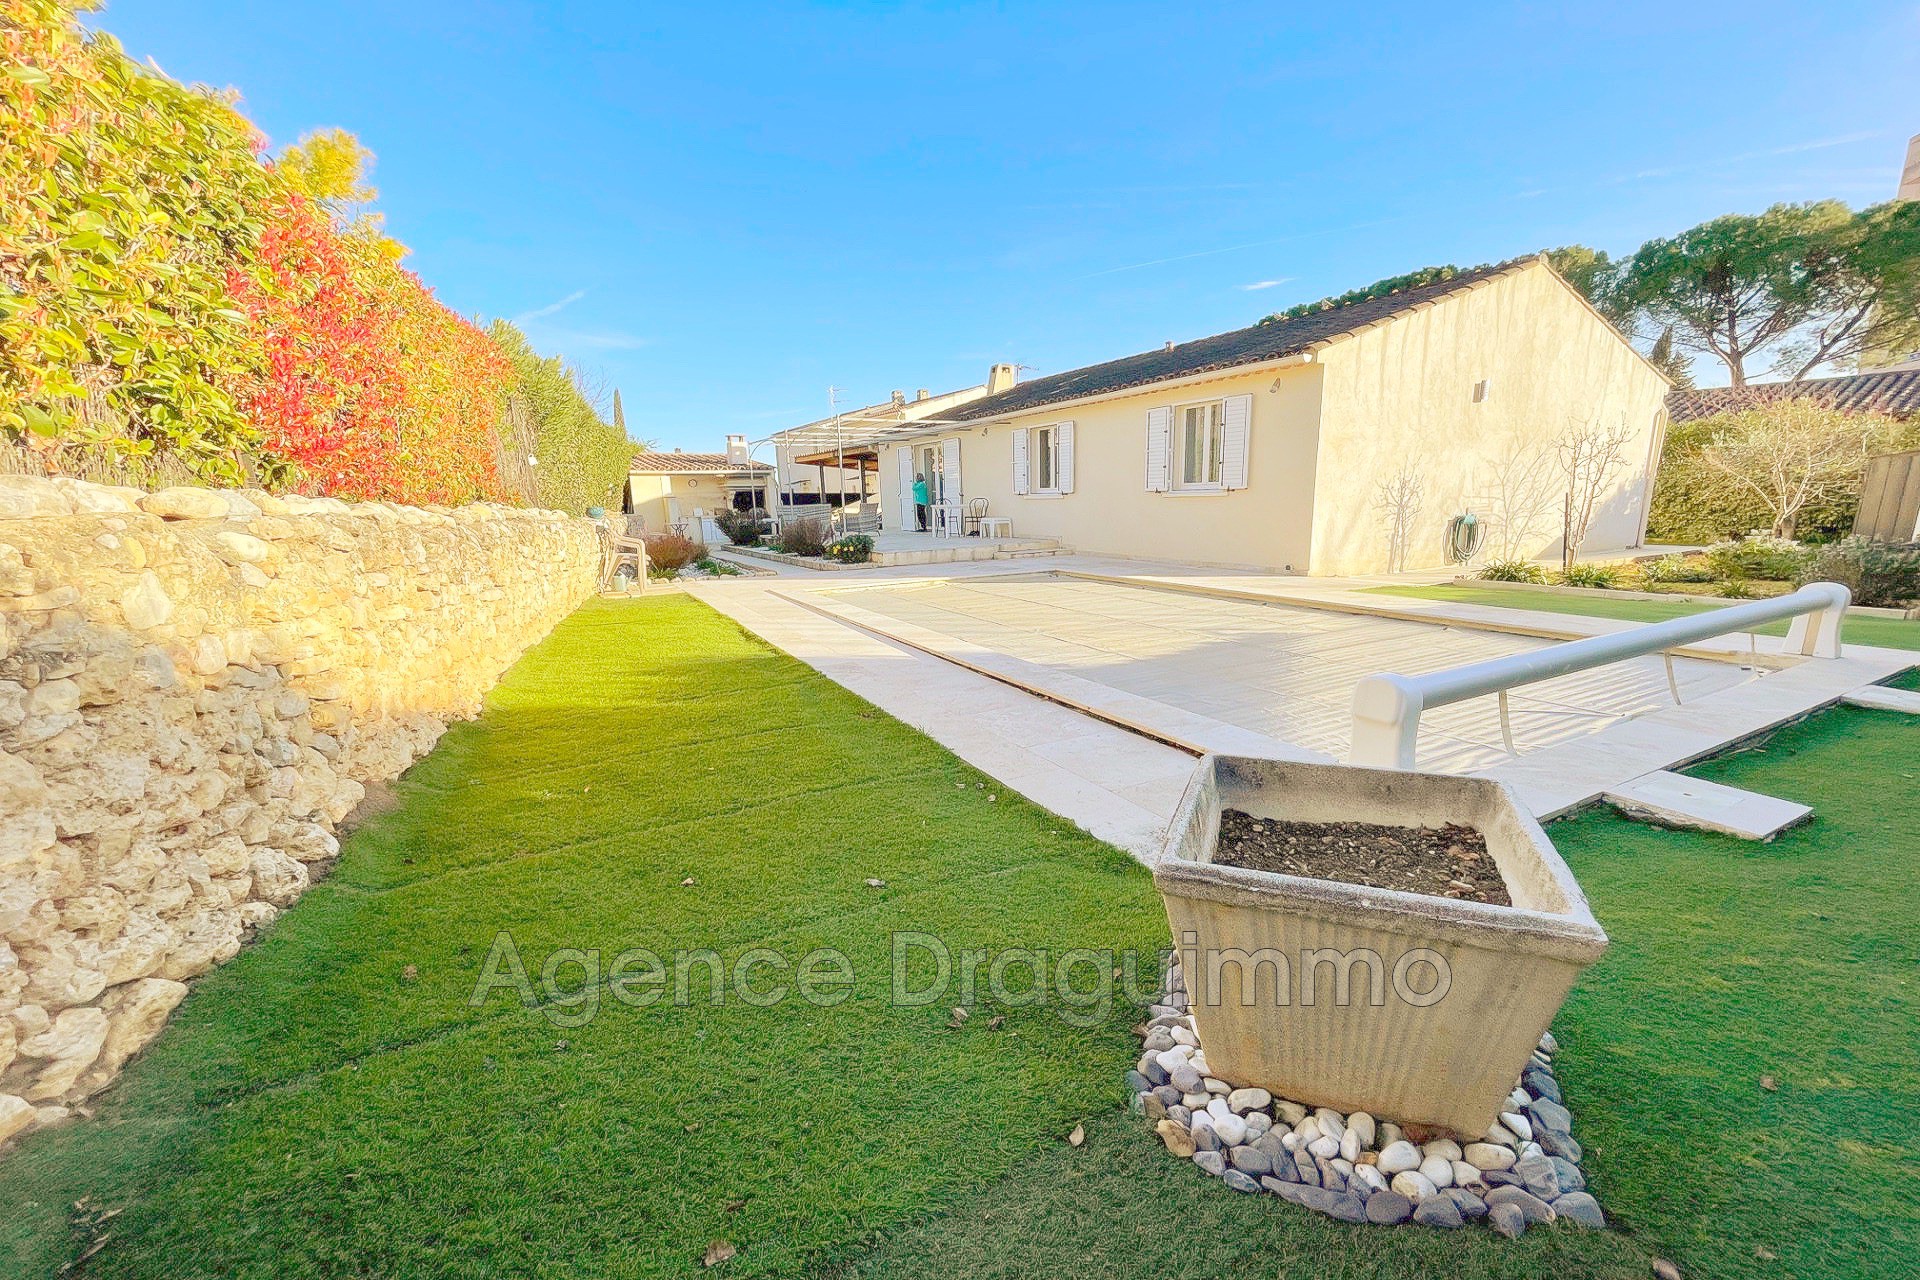 Vente Maison 98m² à Draguignan (83300) - Agence Draguimmo